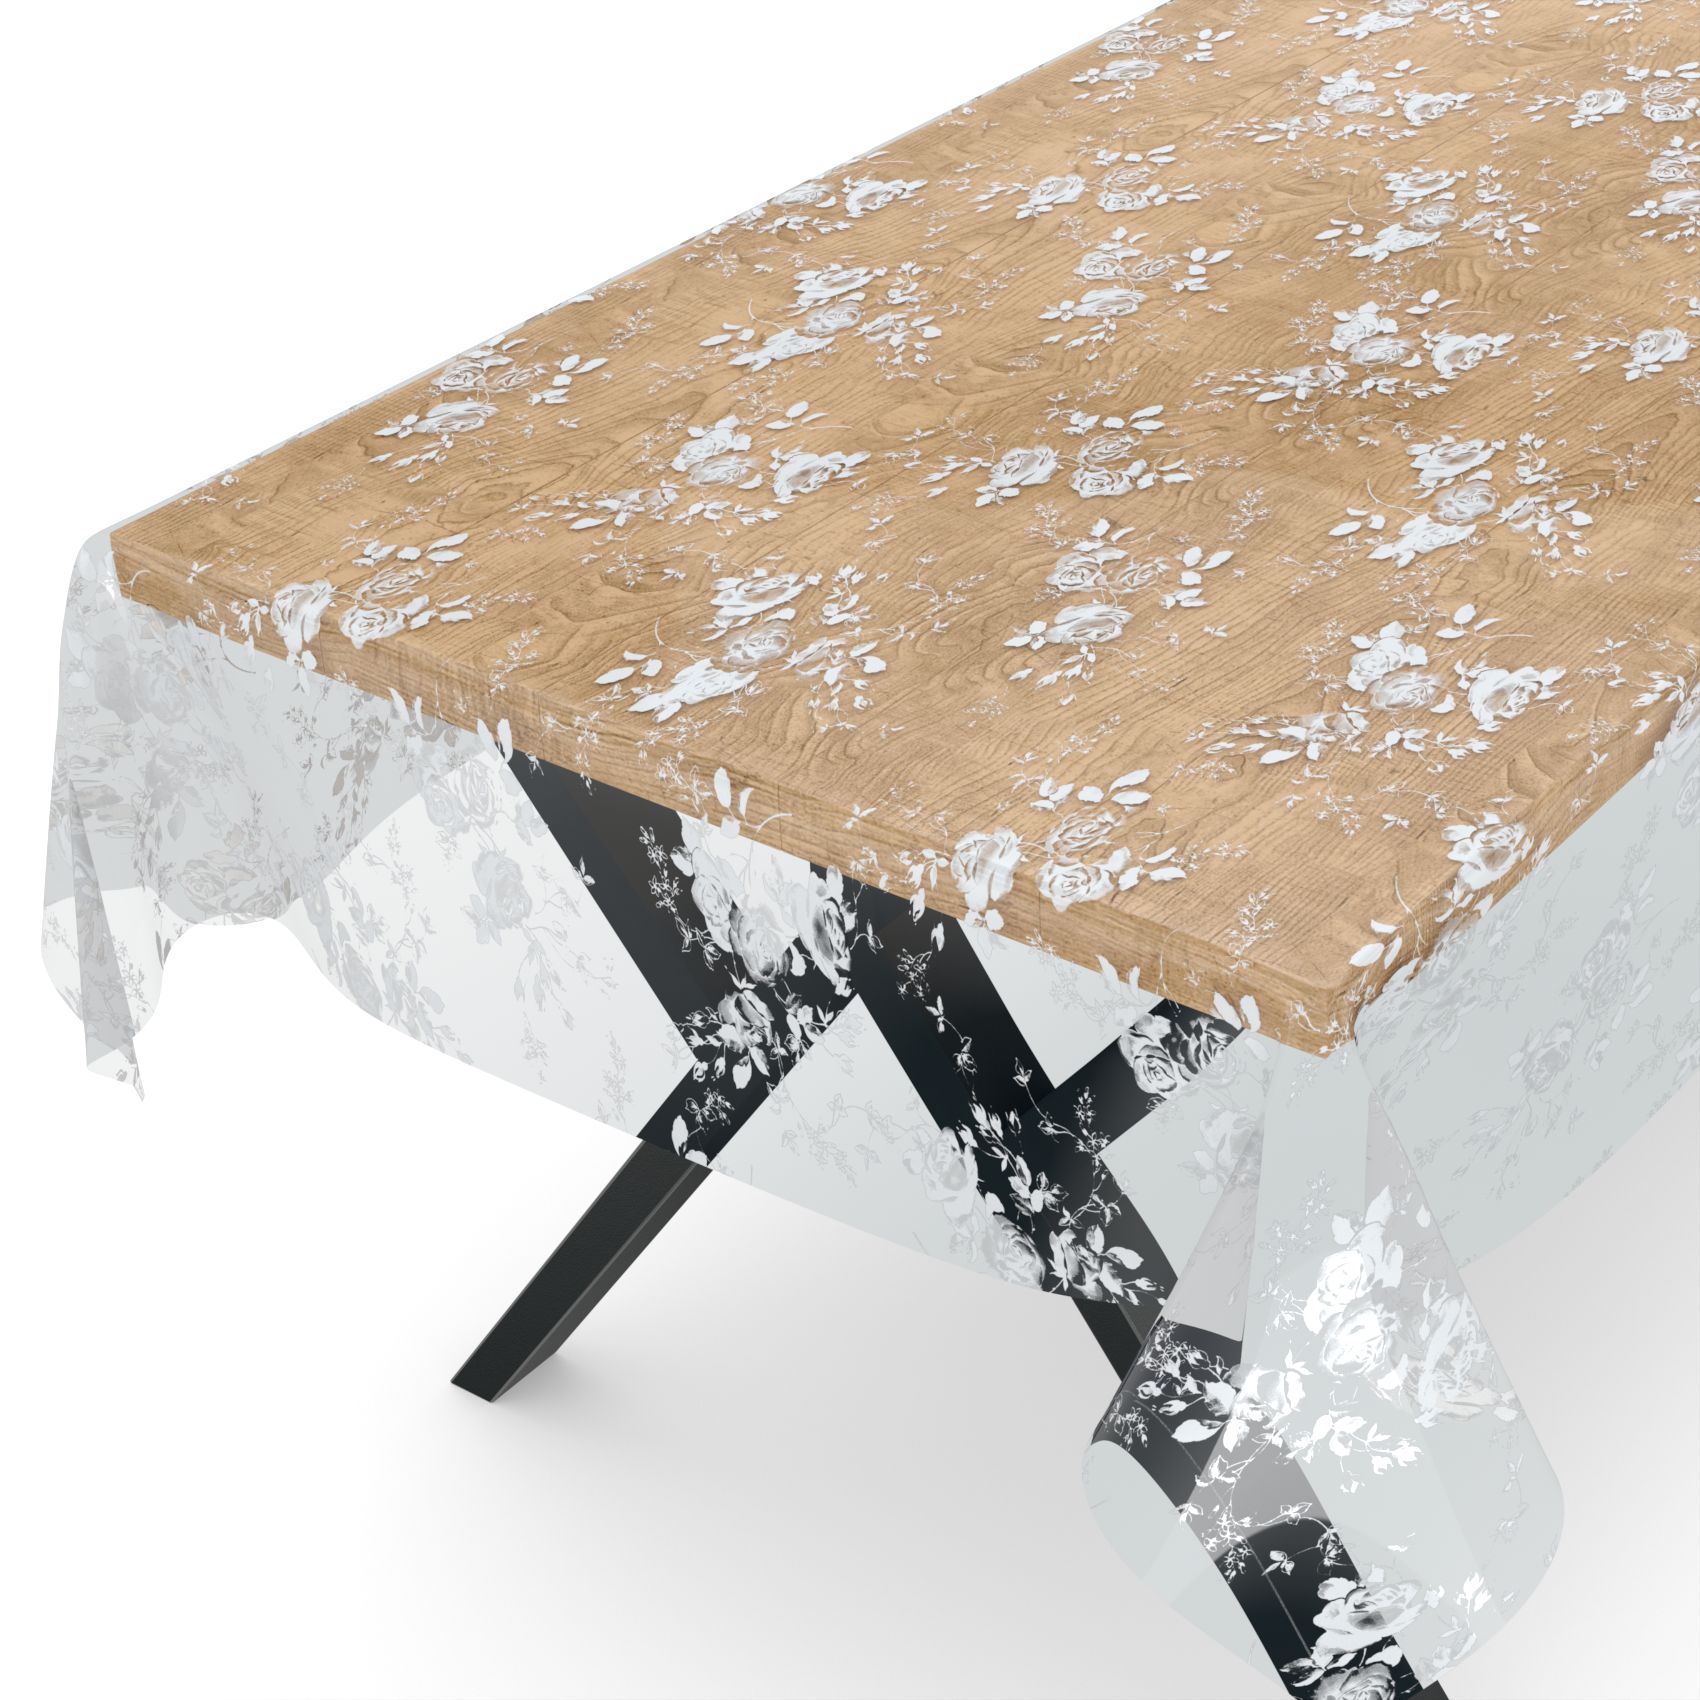 Transparente Tischdecke durchsichtig Tischfolie Tischschutzfolie 0,15mm mit Muster Blumen Weiß 100x140cm Schnittkante